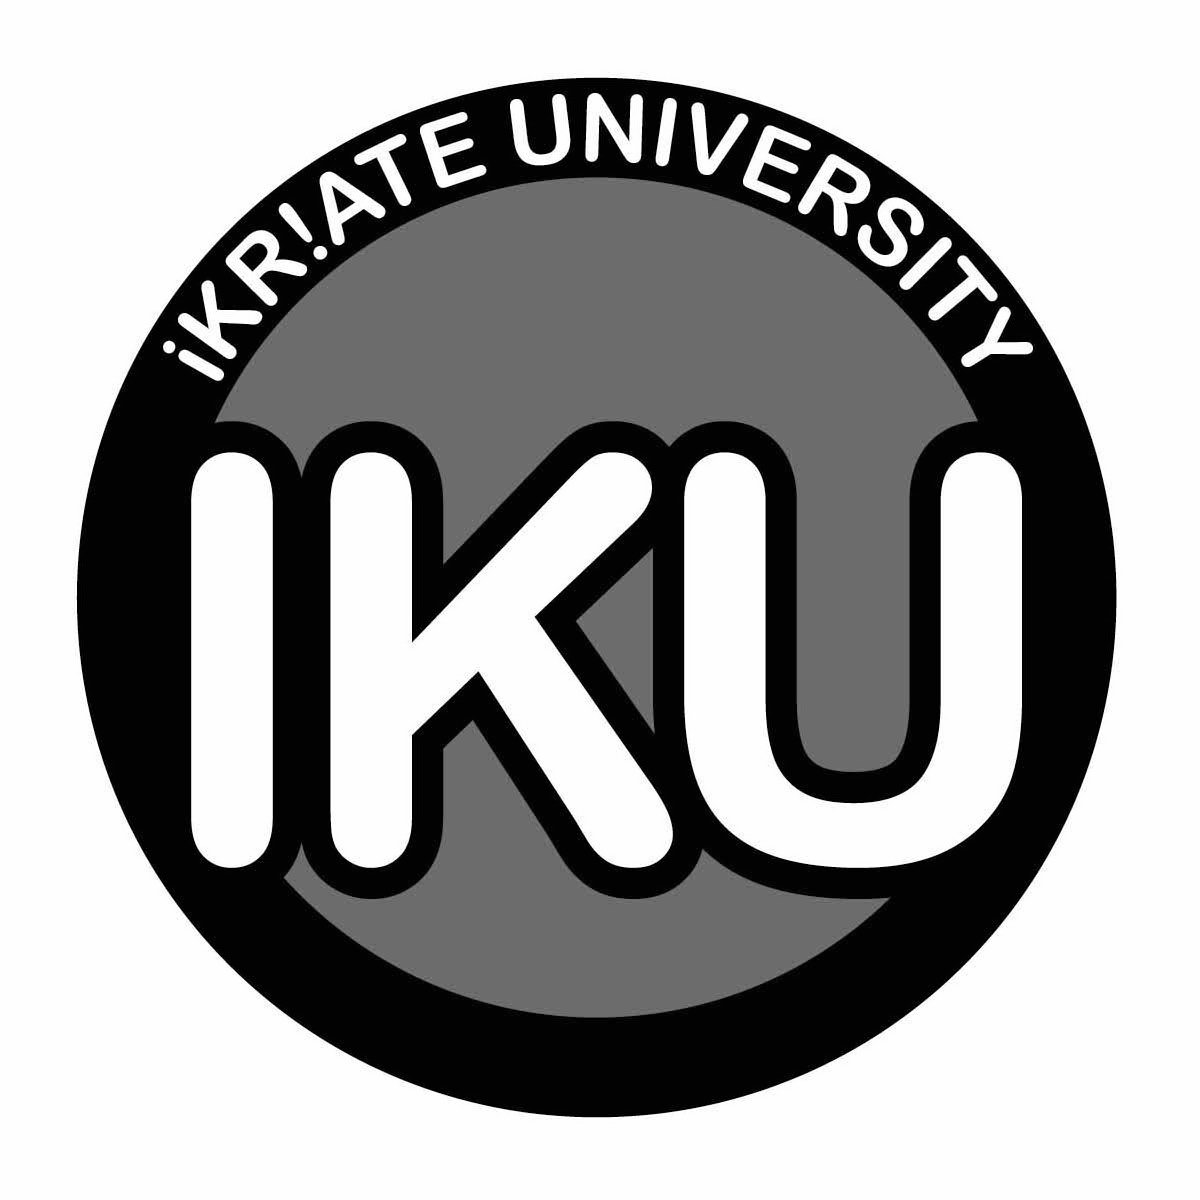 Trademark Logo IKU IKR!ATE UNIVERSITY